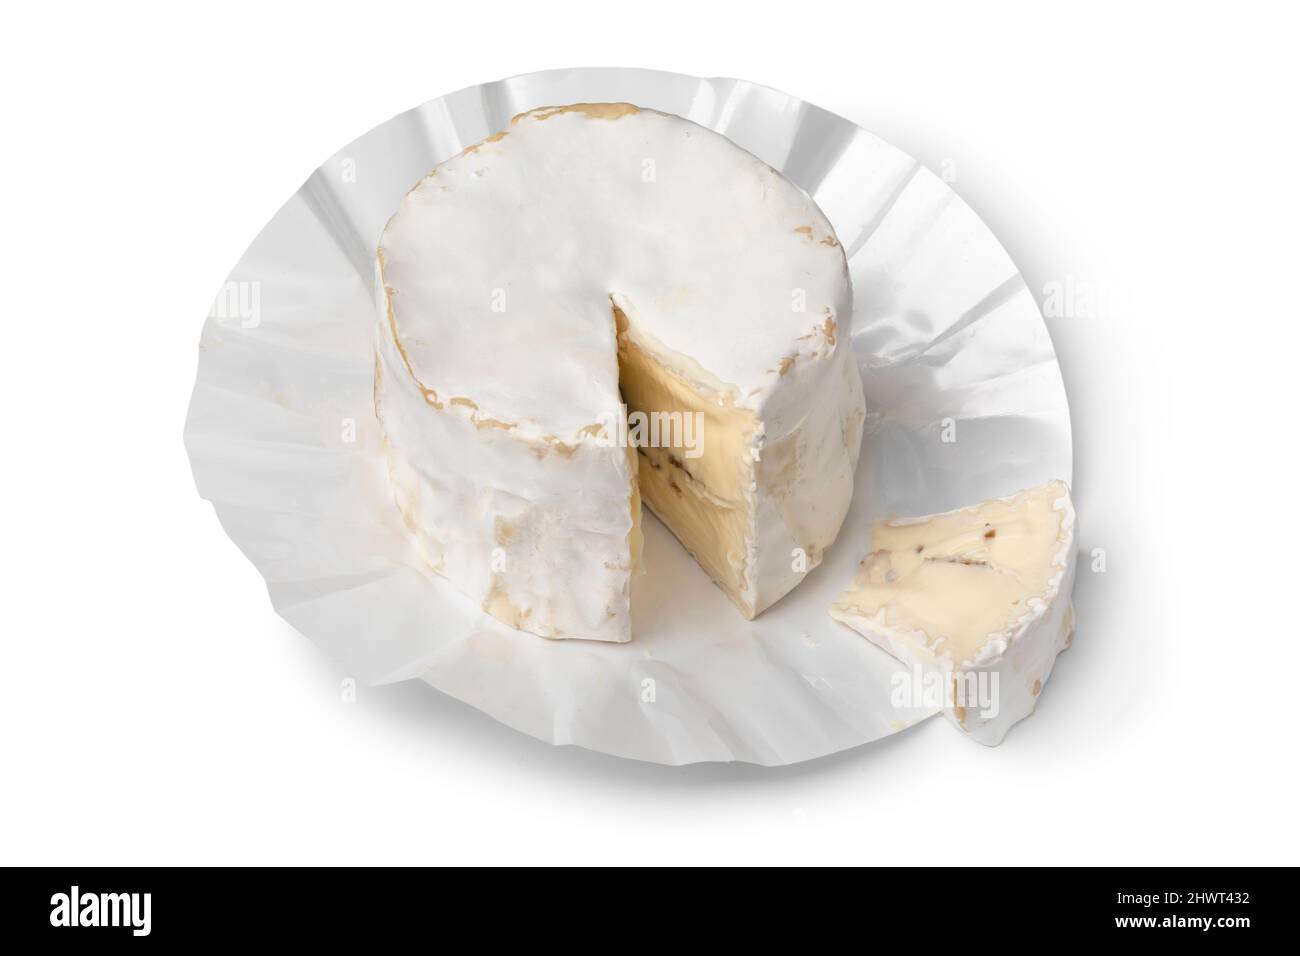 Formaggio di capra francese ripieno di tartufo e un pezzo isolato su sfondo bianco Foto Stock